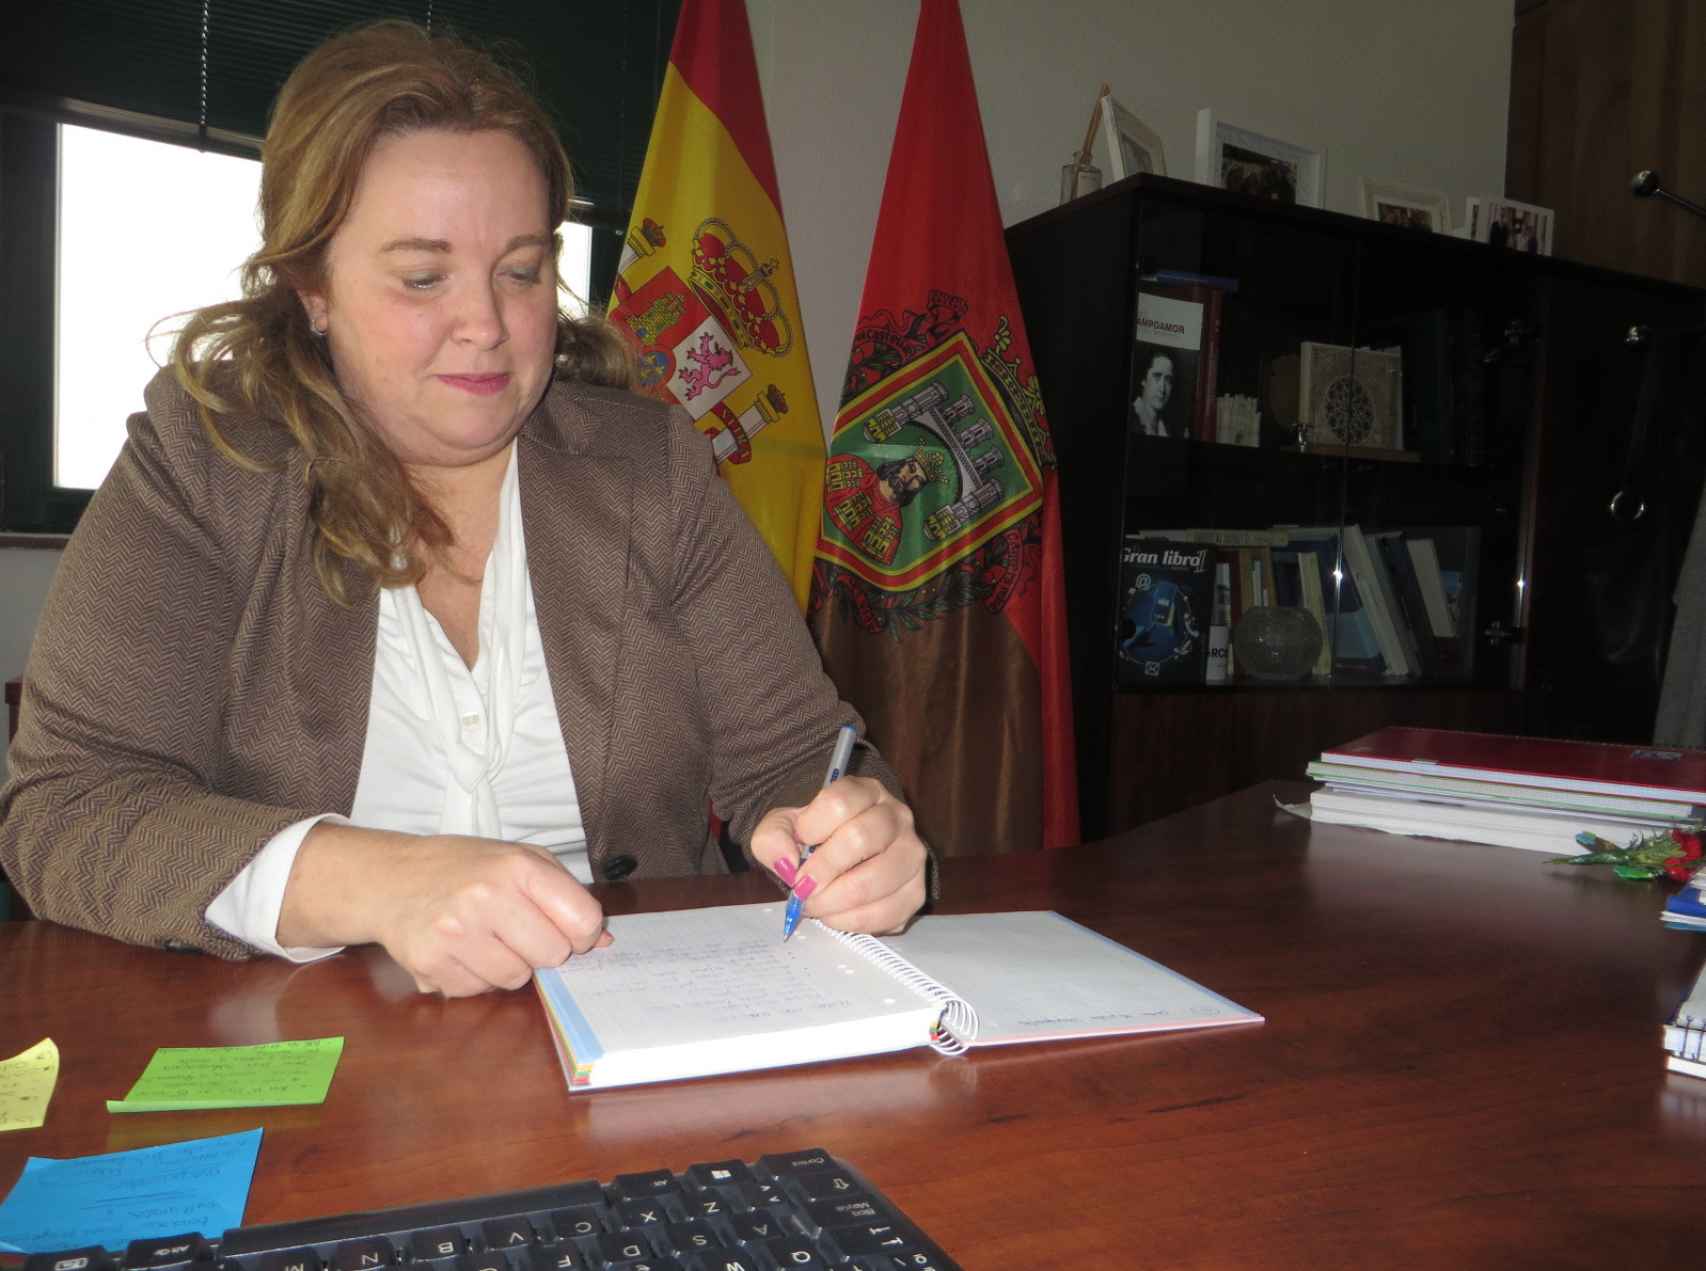 La alcaldesa de Burgos en la mesa de trabajo de Alcaldía, donde despacha a diario multitud de asuntos